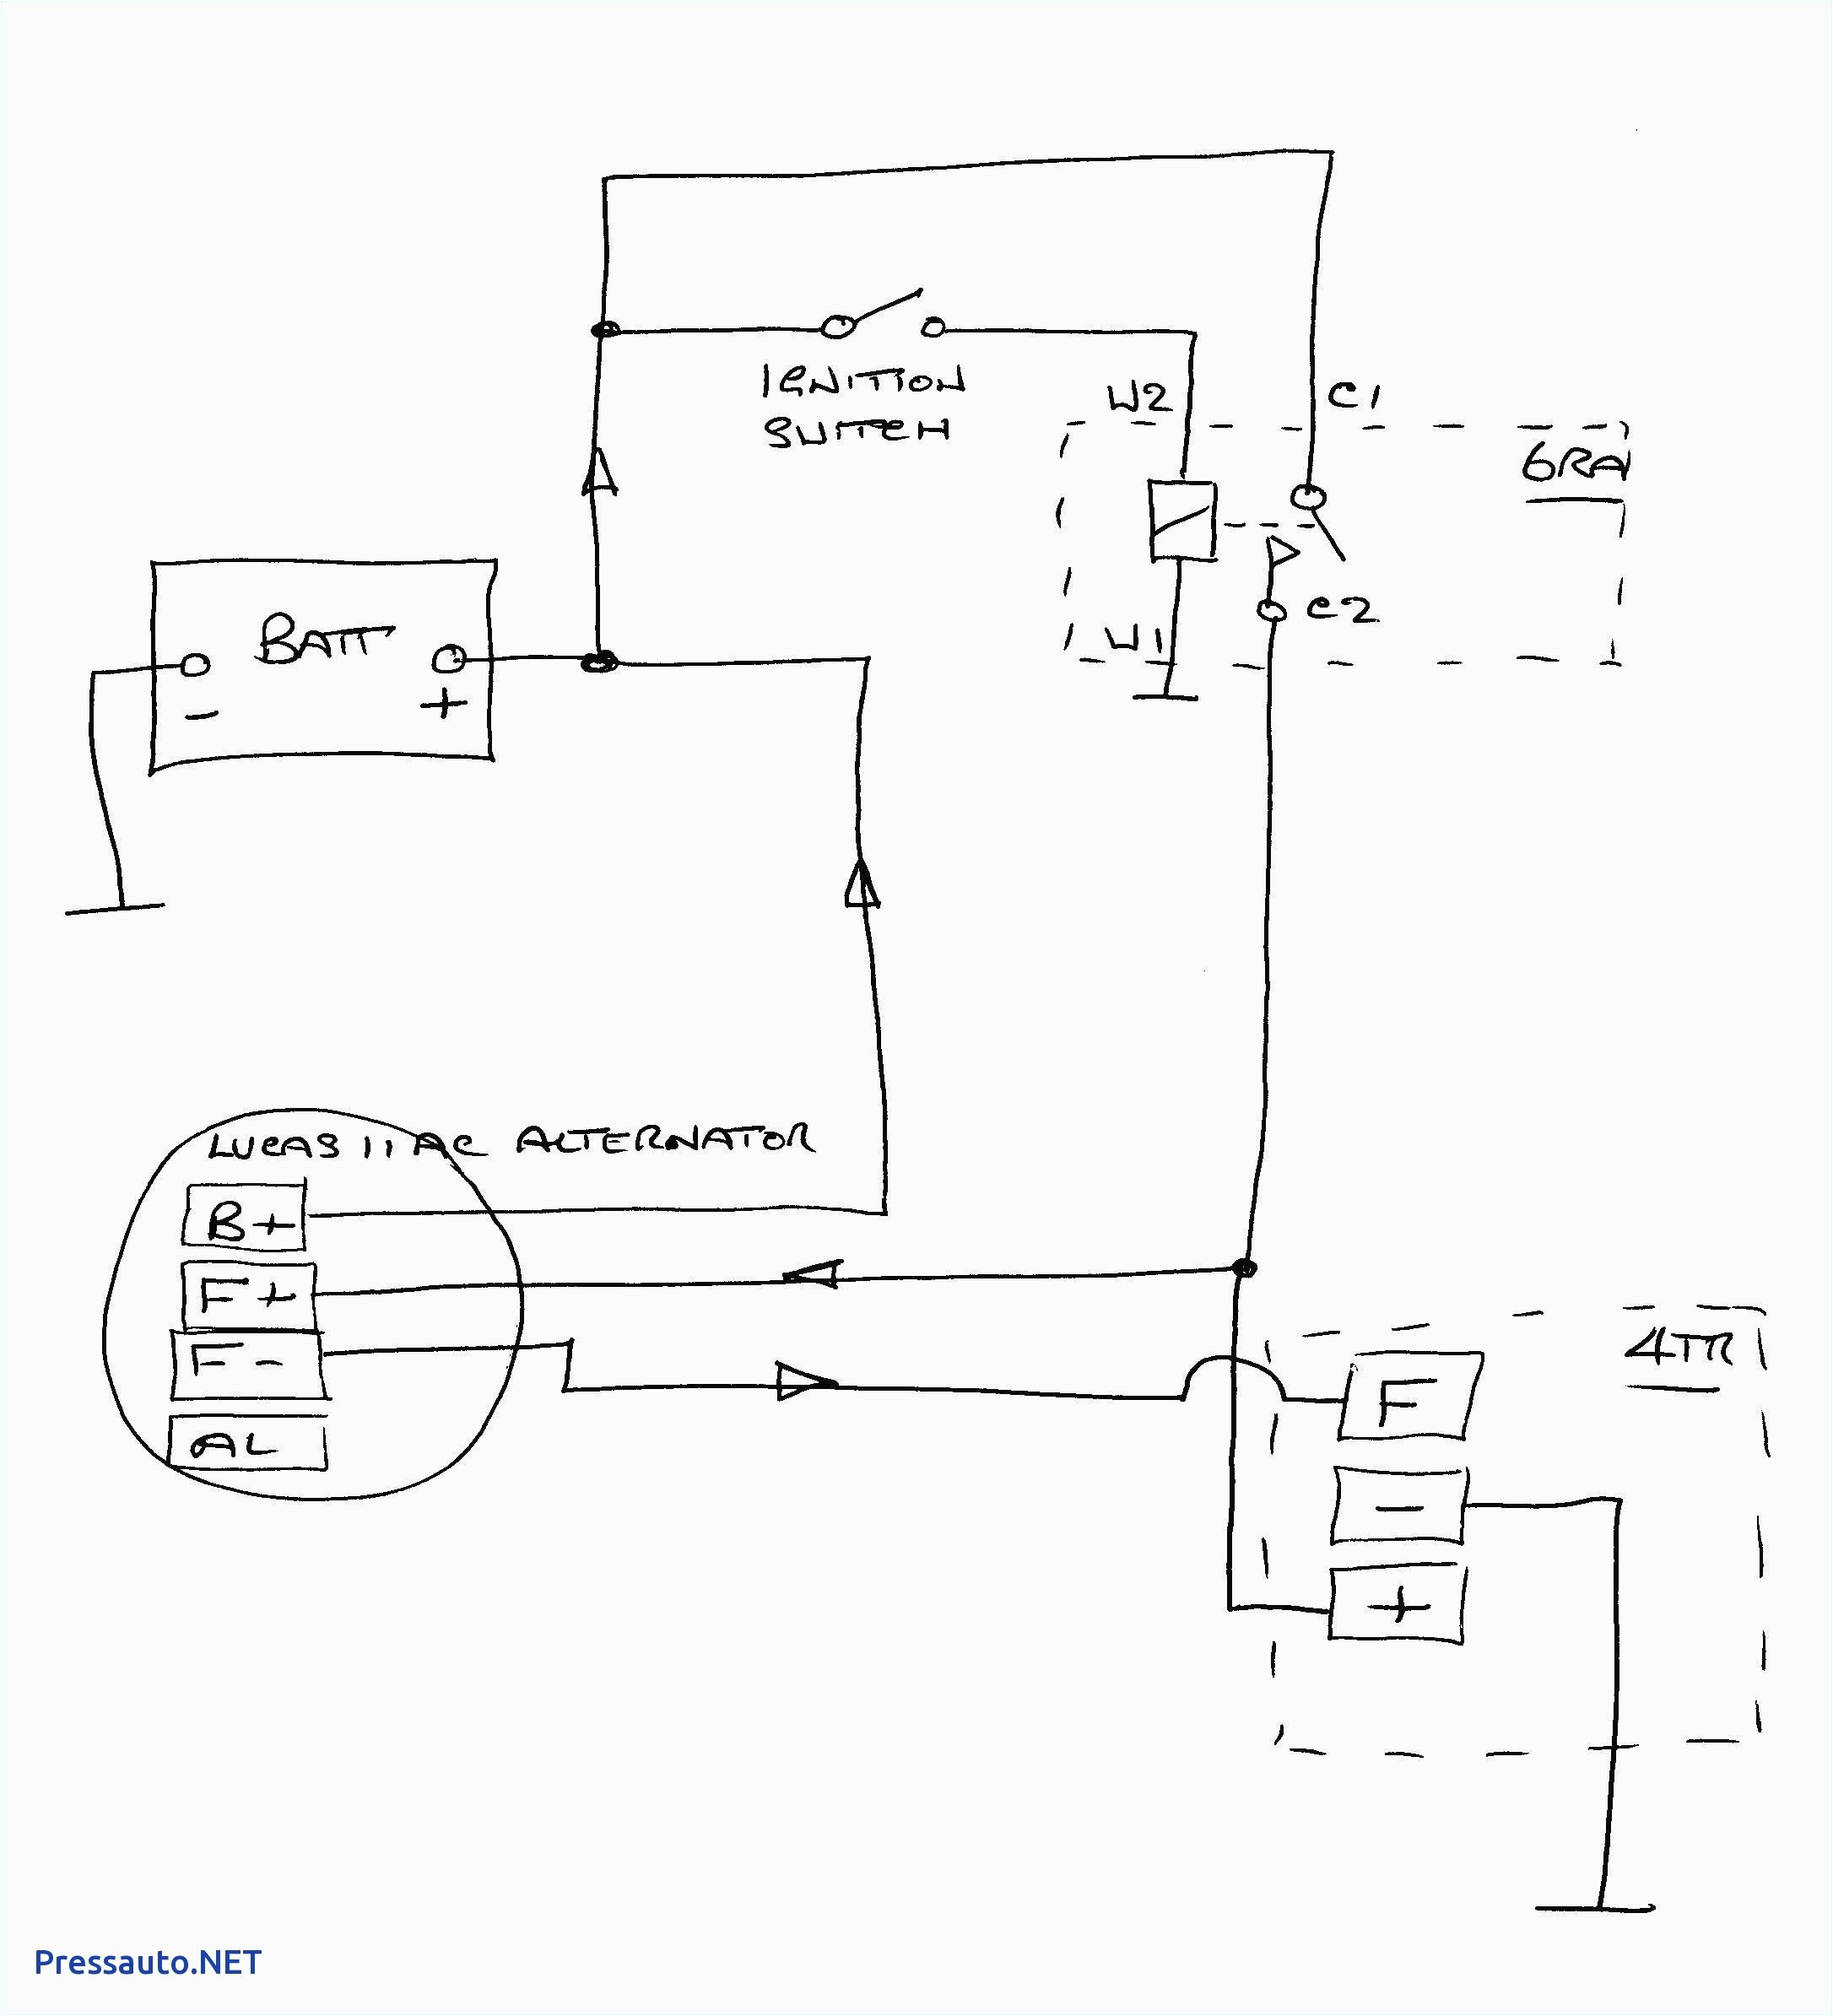 ducellier alternator wiring diagram wiring diagram dd alternator wiring diagram